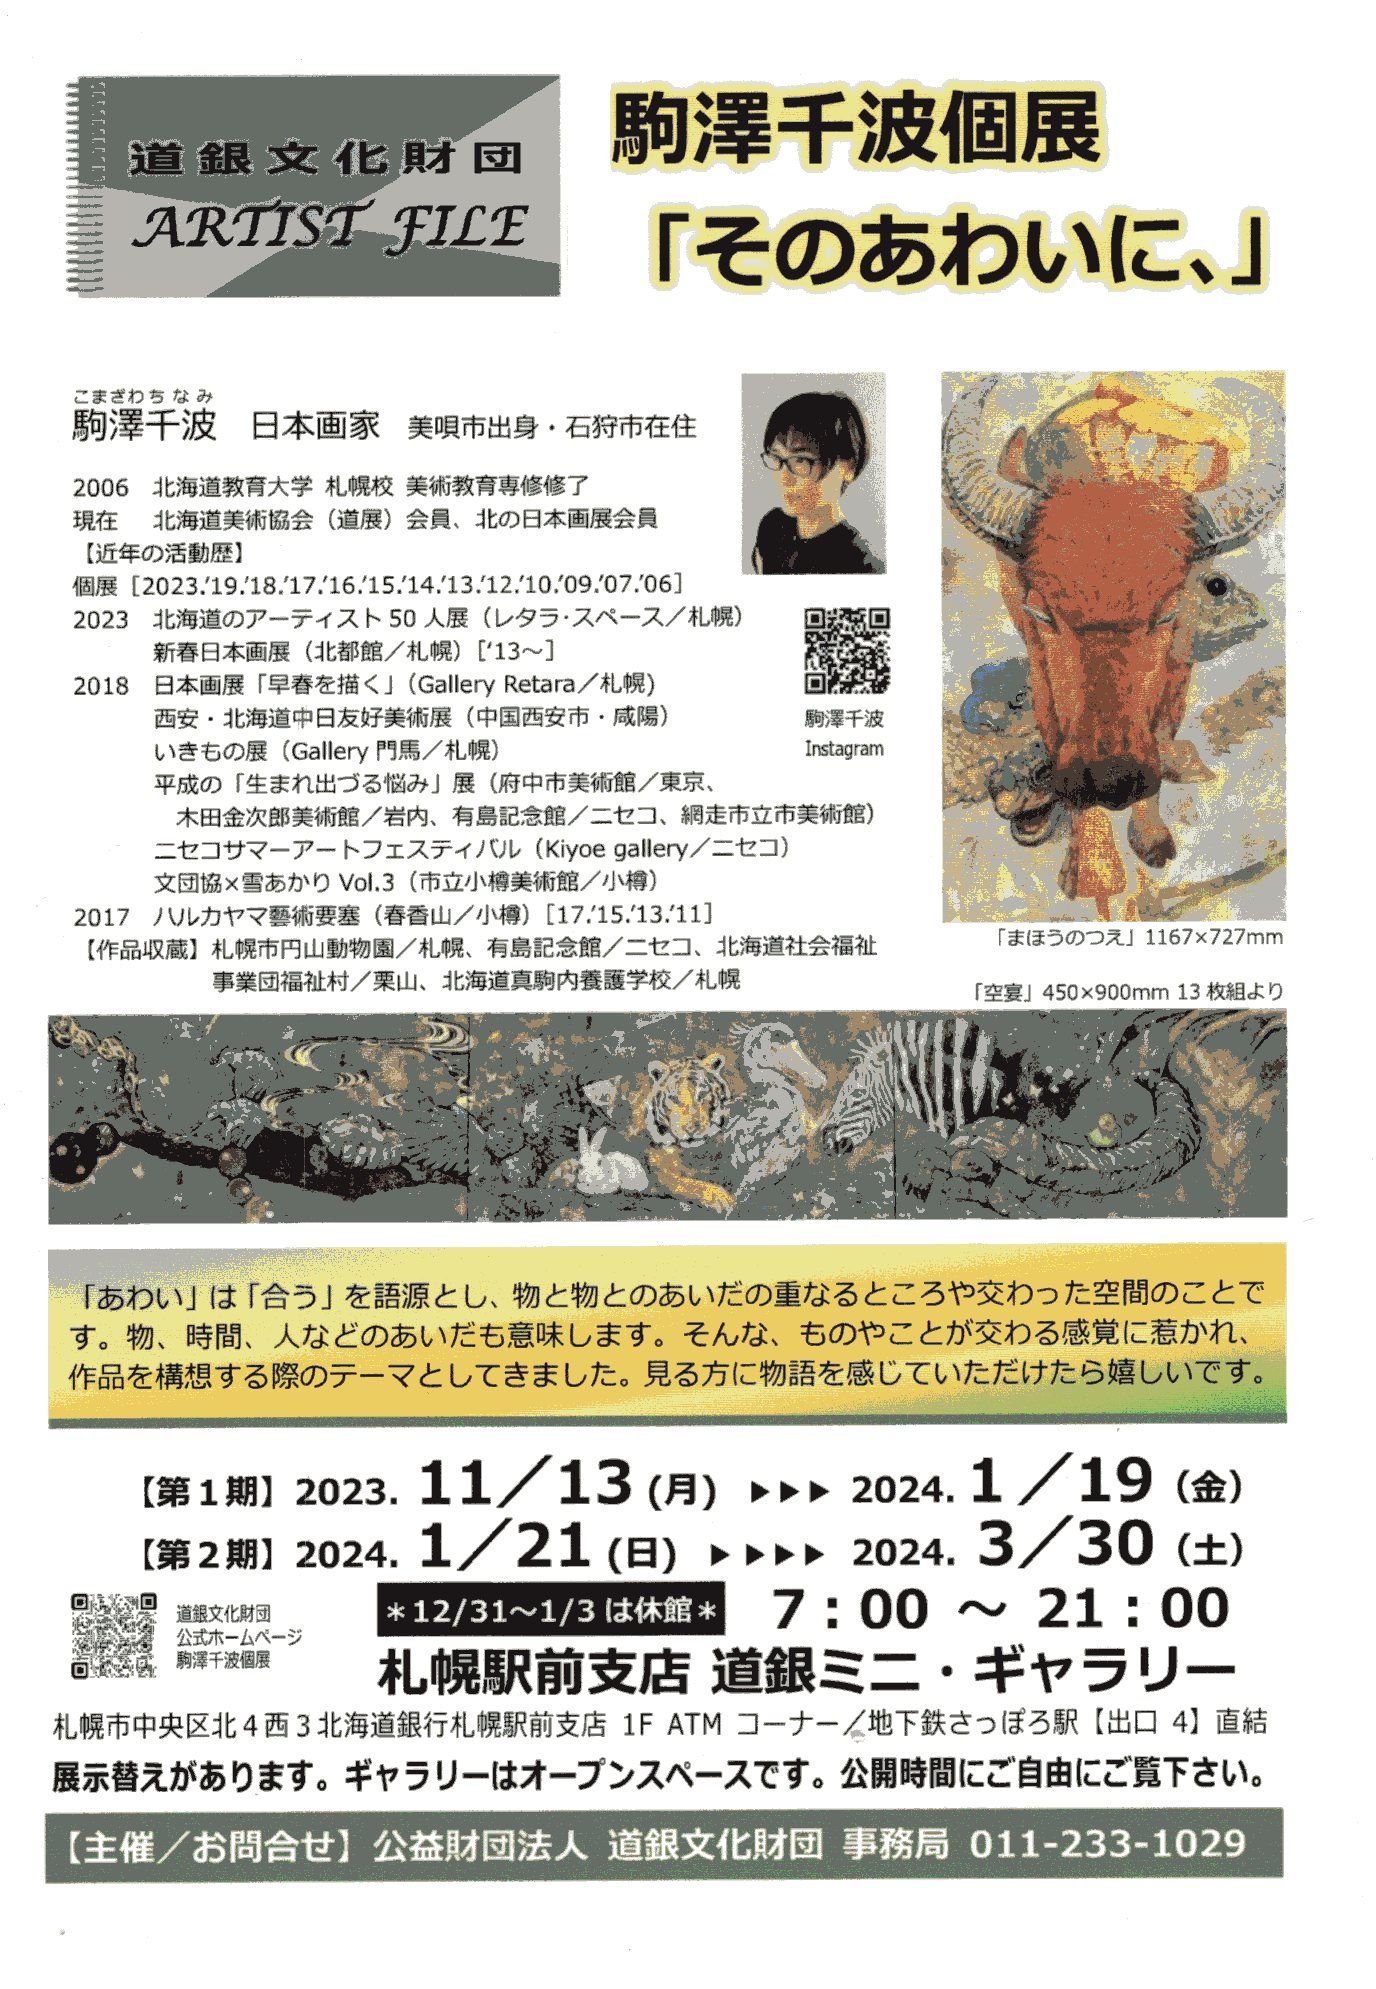 道銀文化財団 アーティストファイル 駒澤千波個展「そのあわいに、」